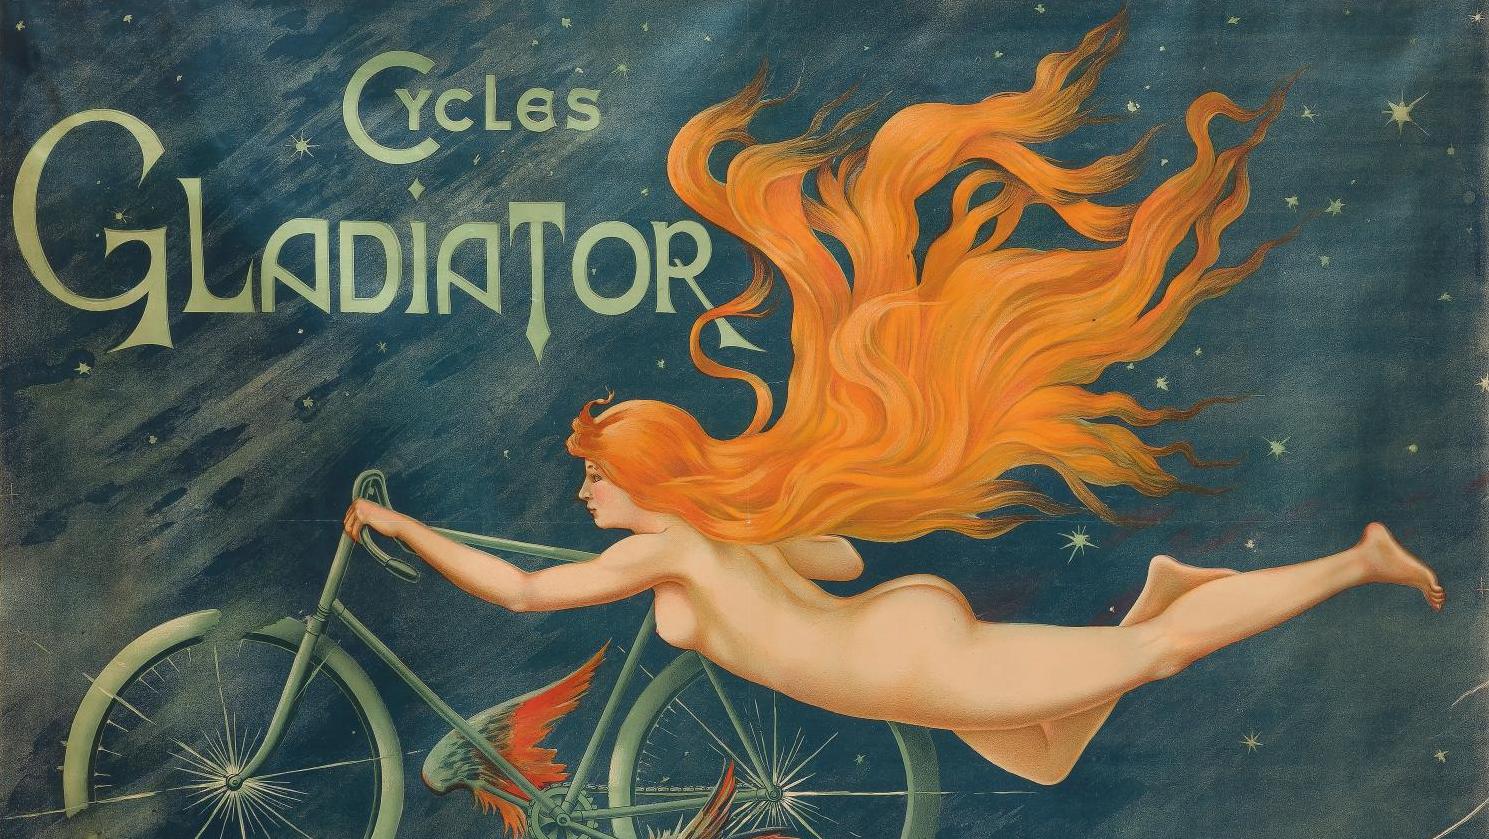 Anonyme, Cycles Gladiator à Paris, chromolithographie entoilée, imprimerie Massias,... Les affiches de la collection Michel Romand